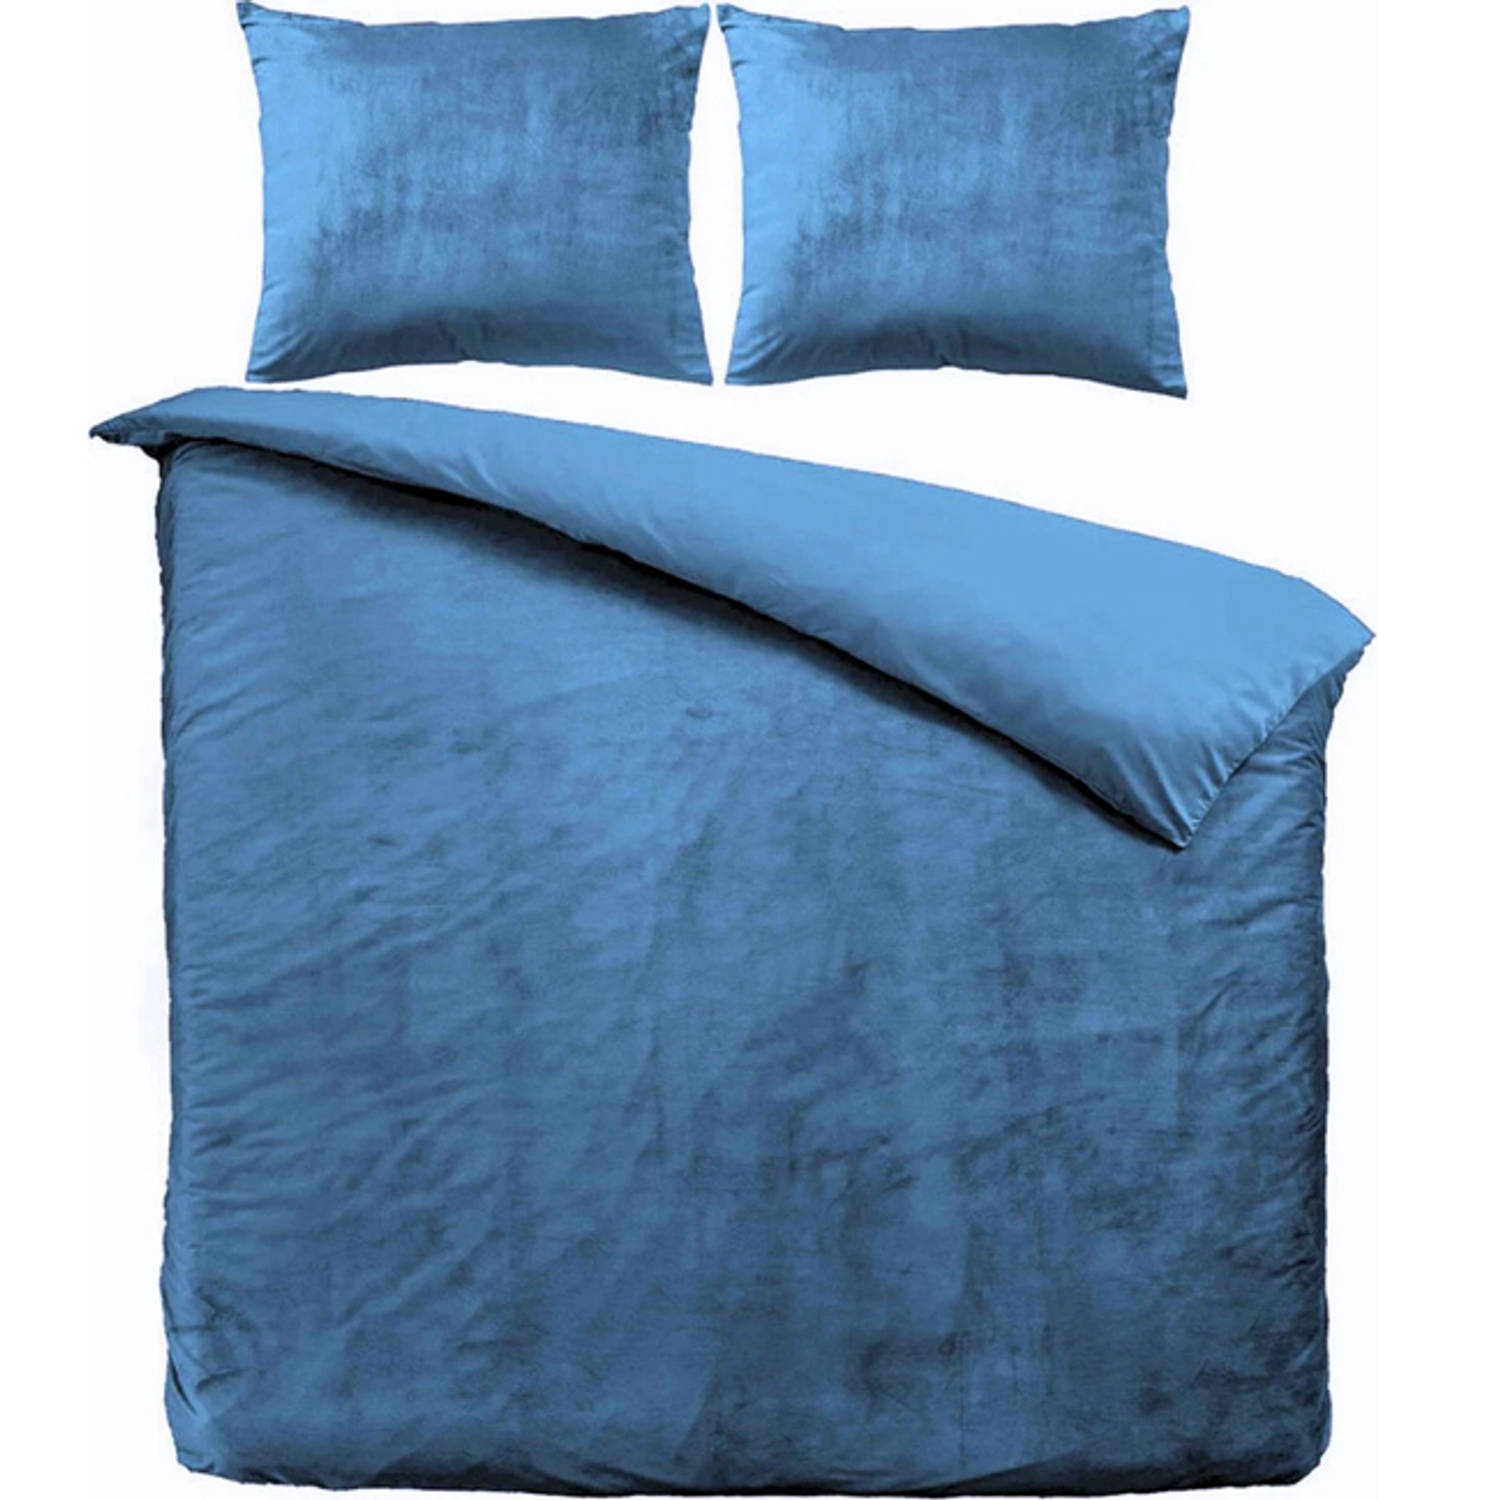 Zavelo Dekbedovertrek Velvet Comfort Petrol Blauw-Lits-jumeaux (240 x 200-220 cm)